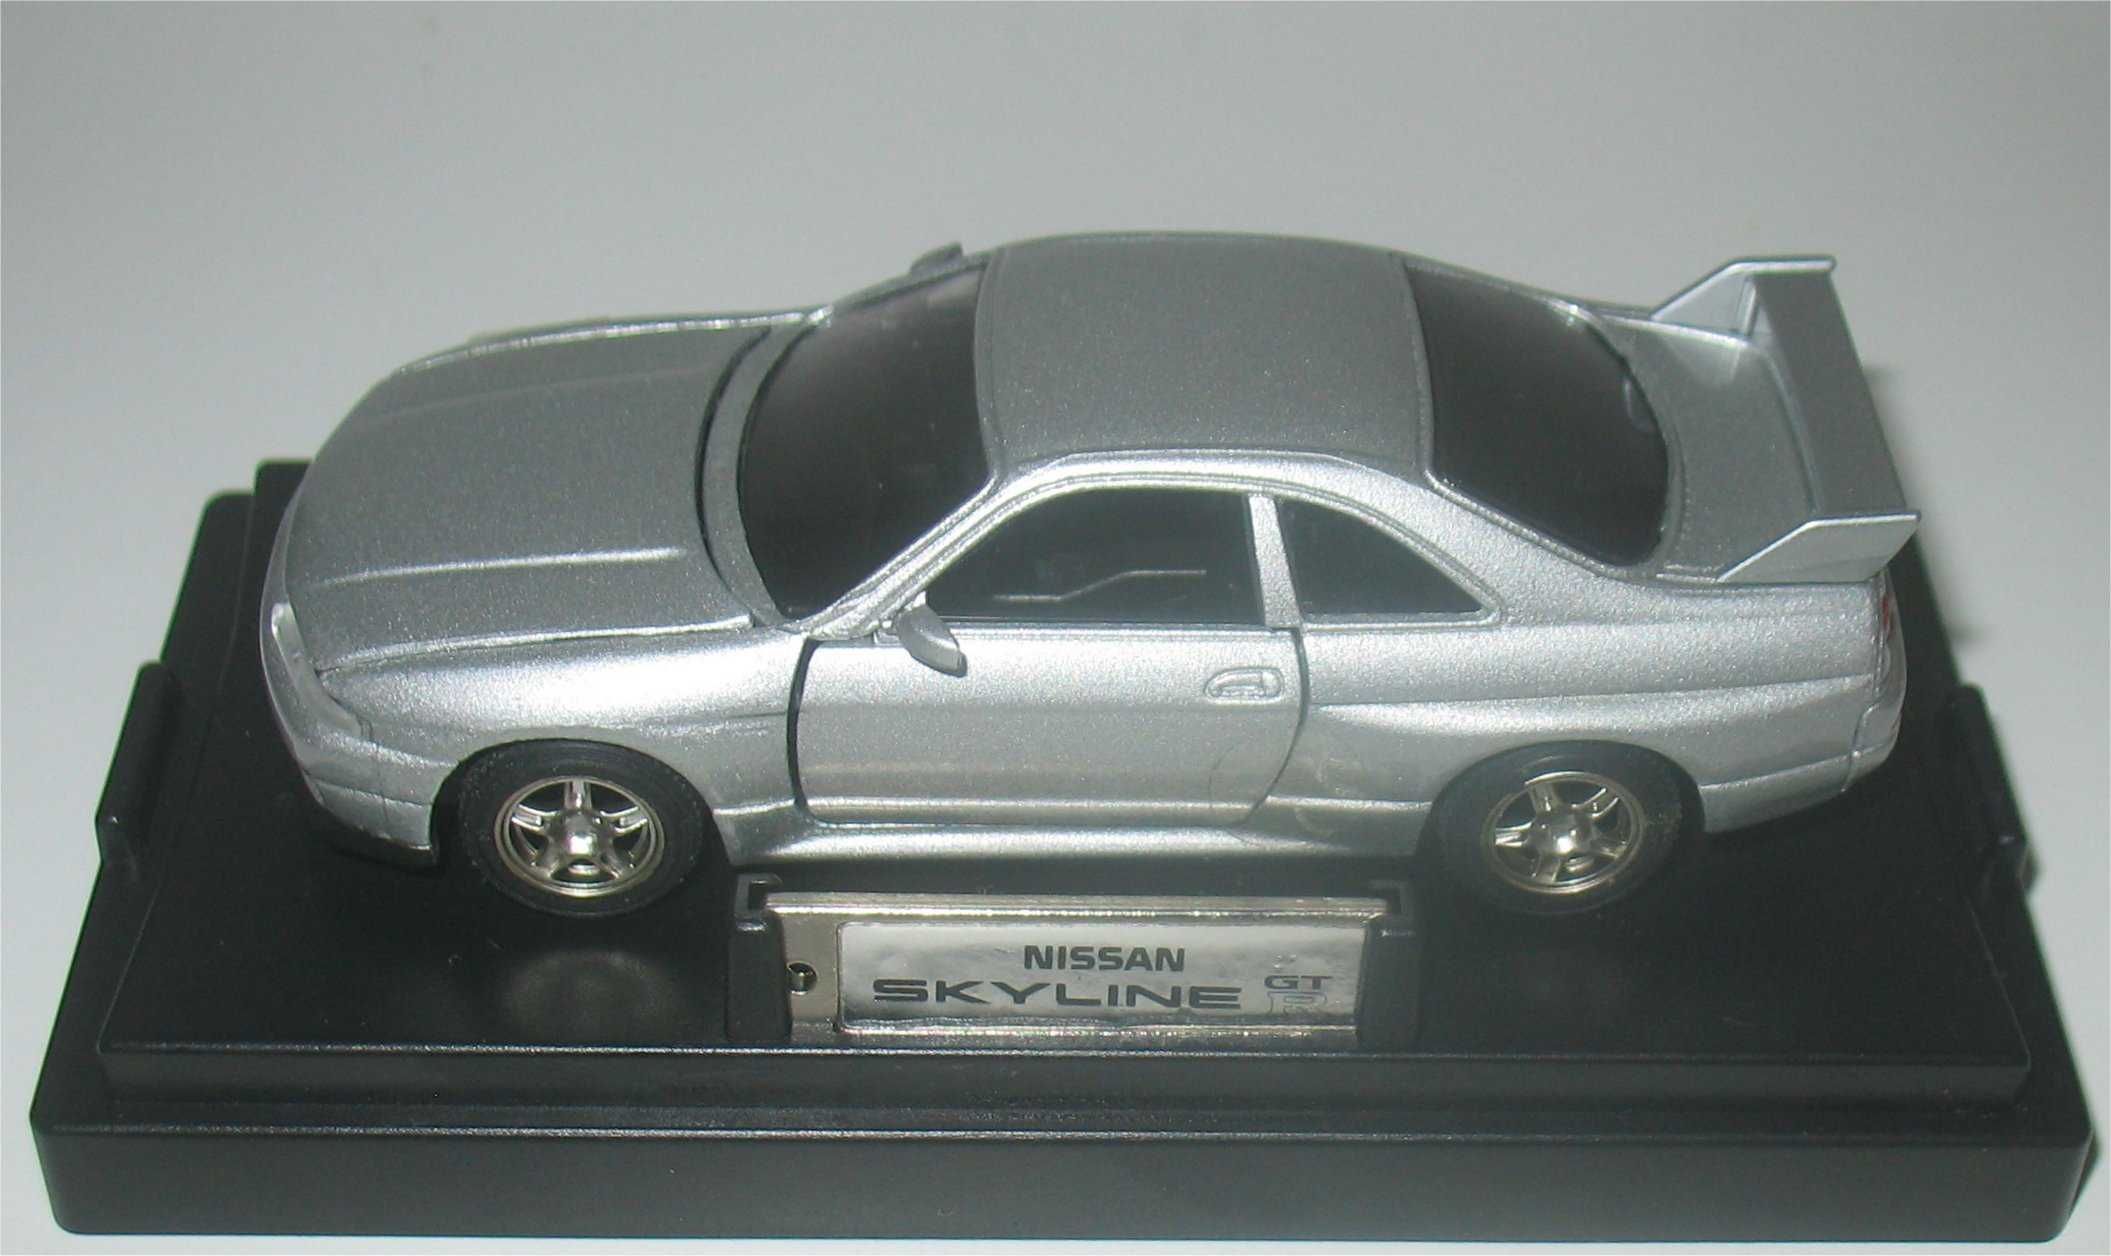 MTECH - Nissan Skyline GT-R